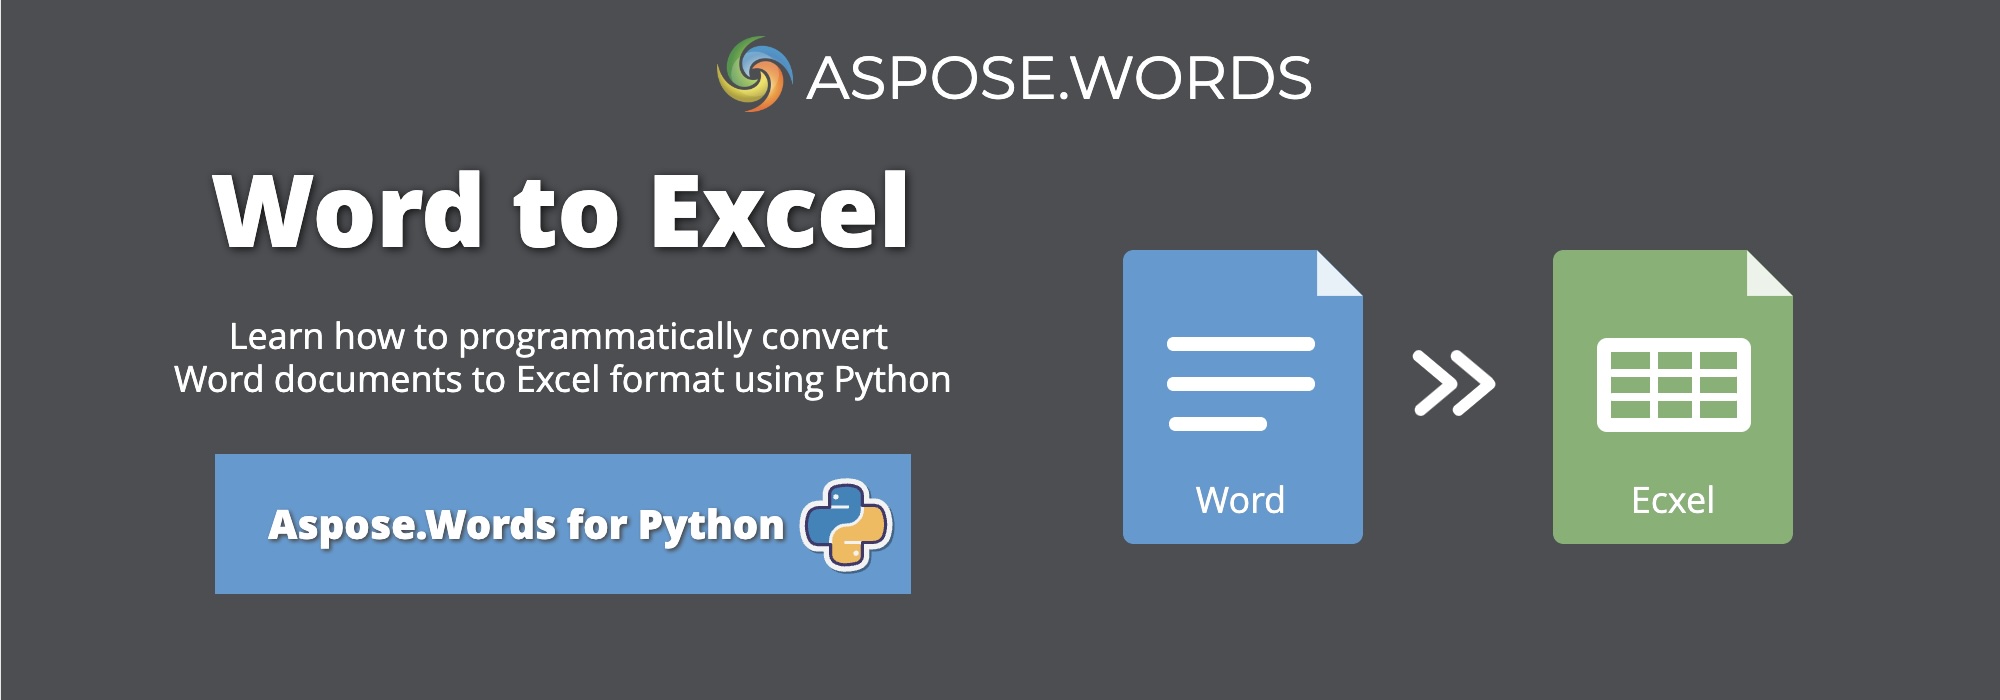 Převod Wordu do Excelu v Python | Převod DOCX do XLSX v Python